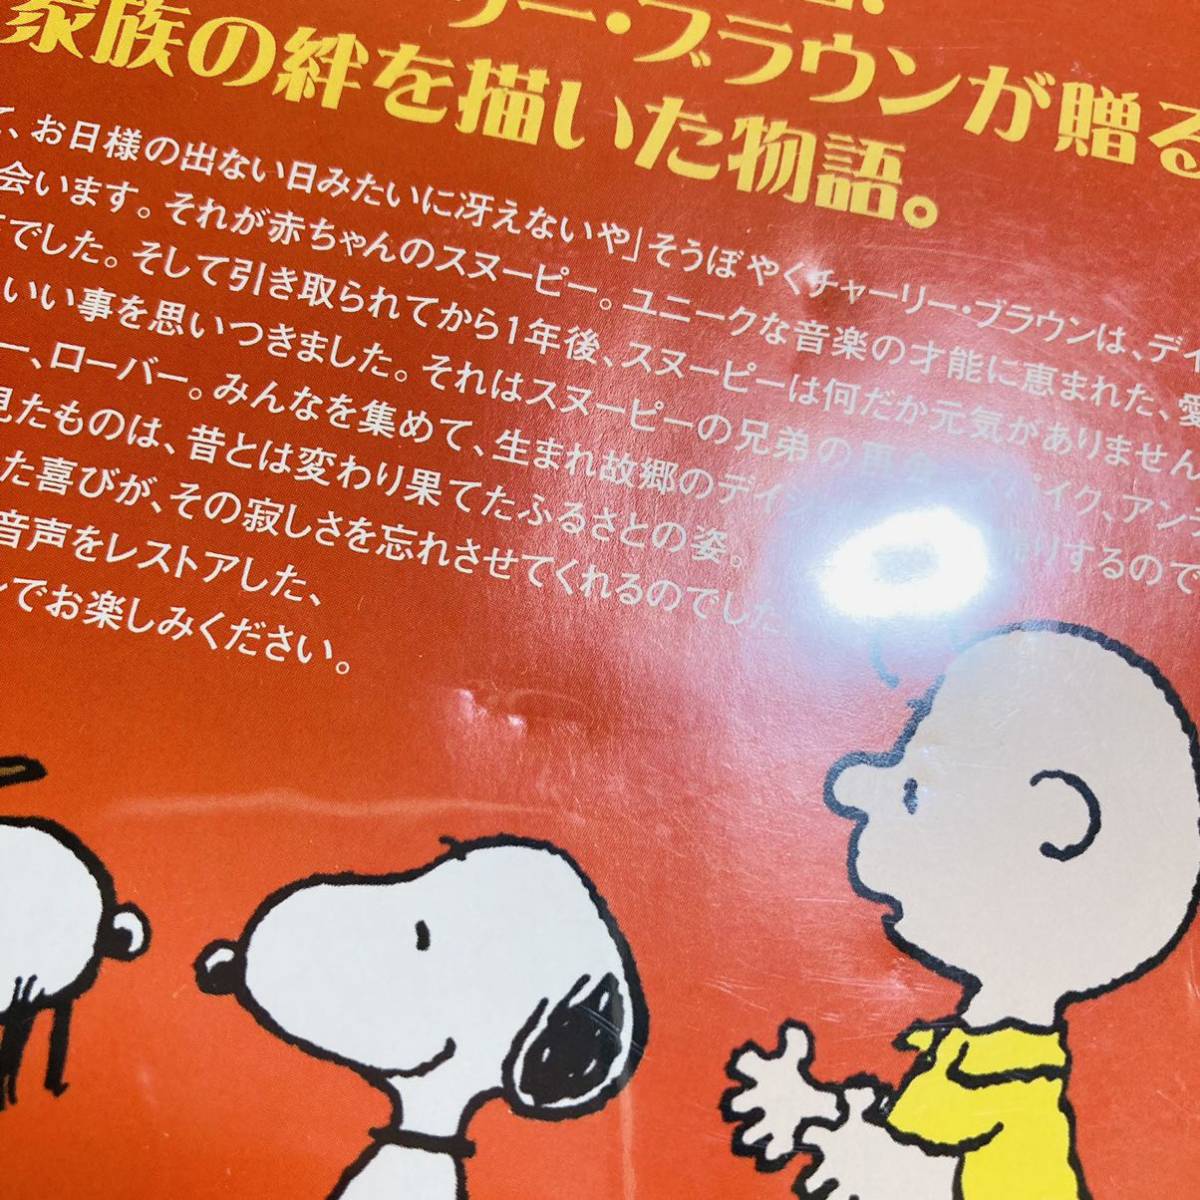 Paypayフリマ 212 送料無料 スヌーピー誕生 Dvd アニメ チャーリーブラウン Snoopy スヌーピー